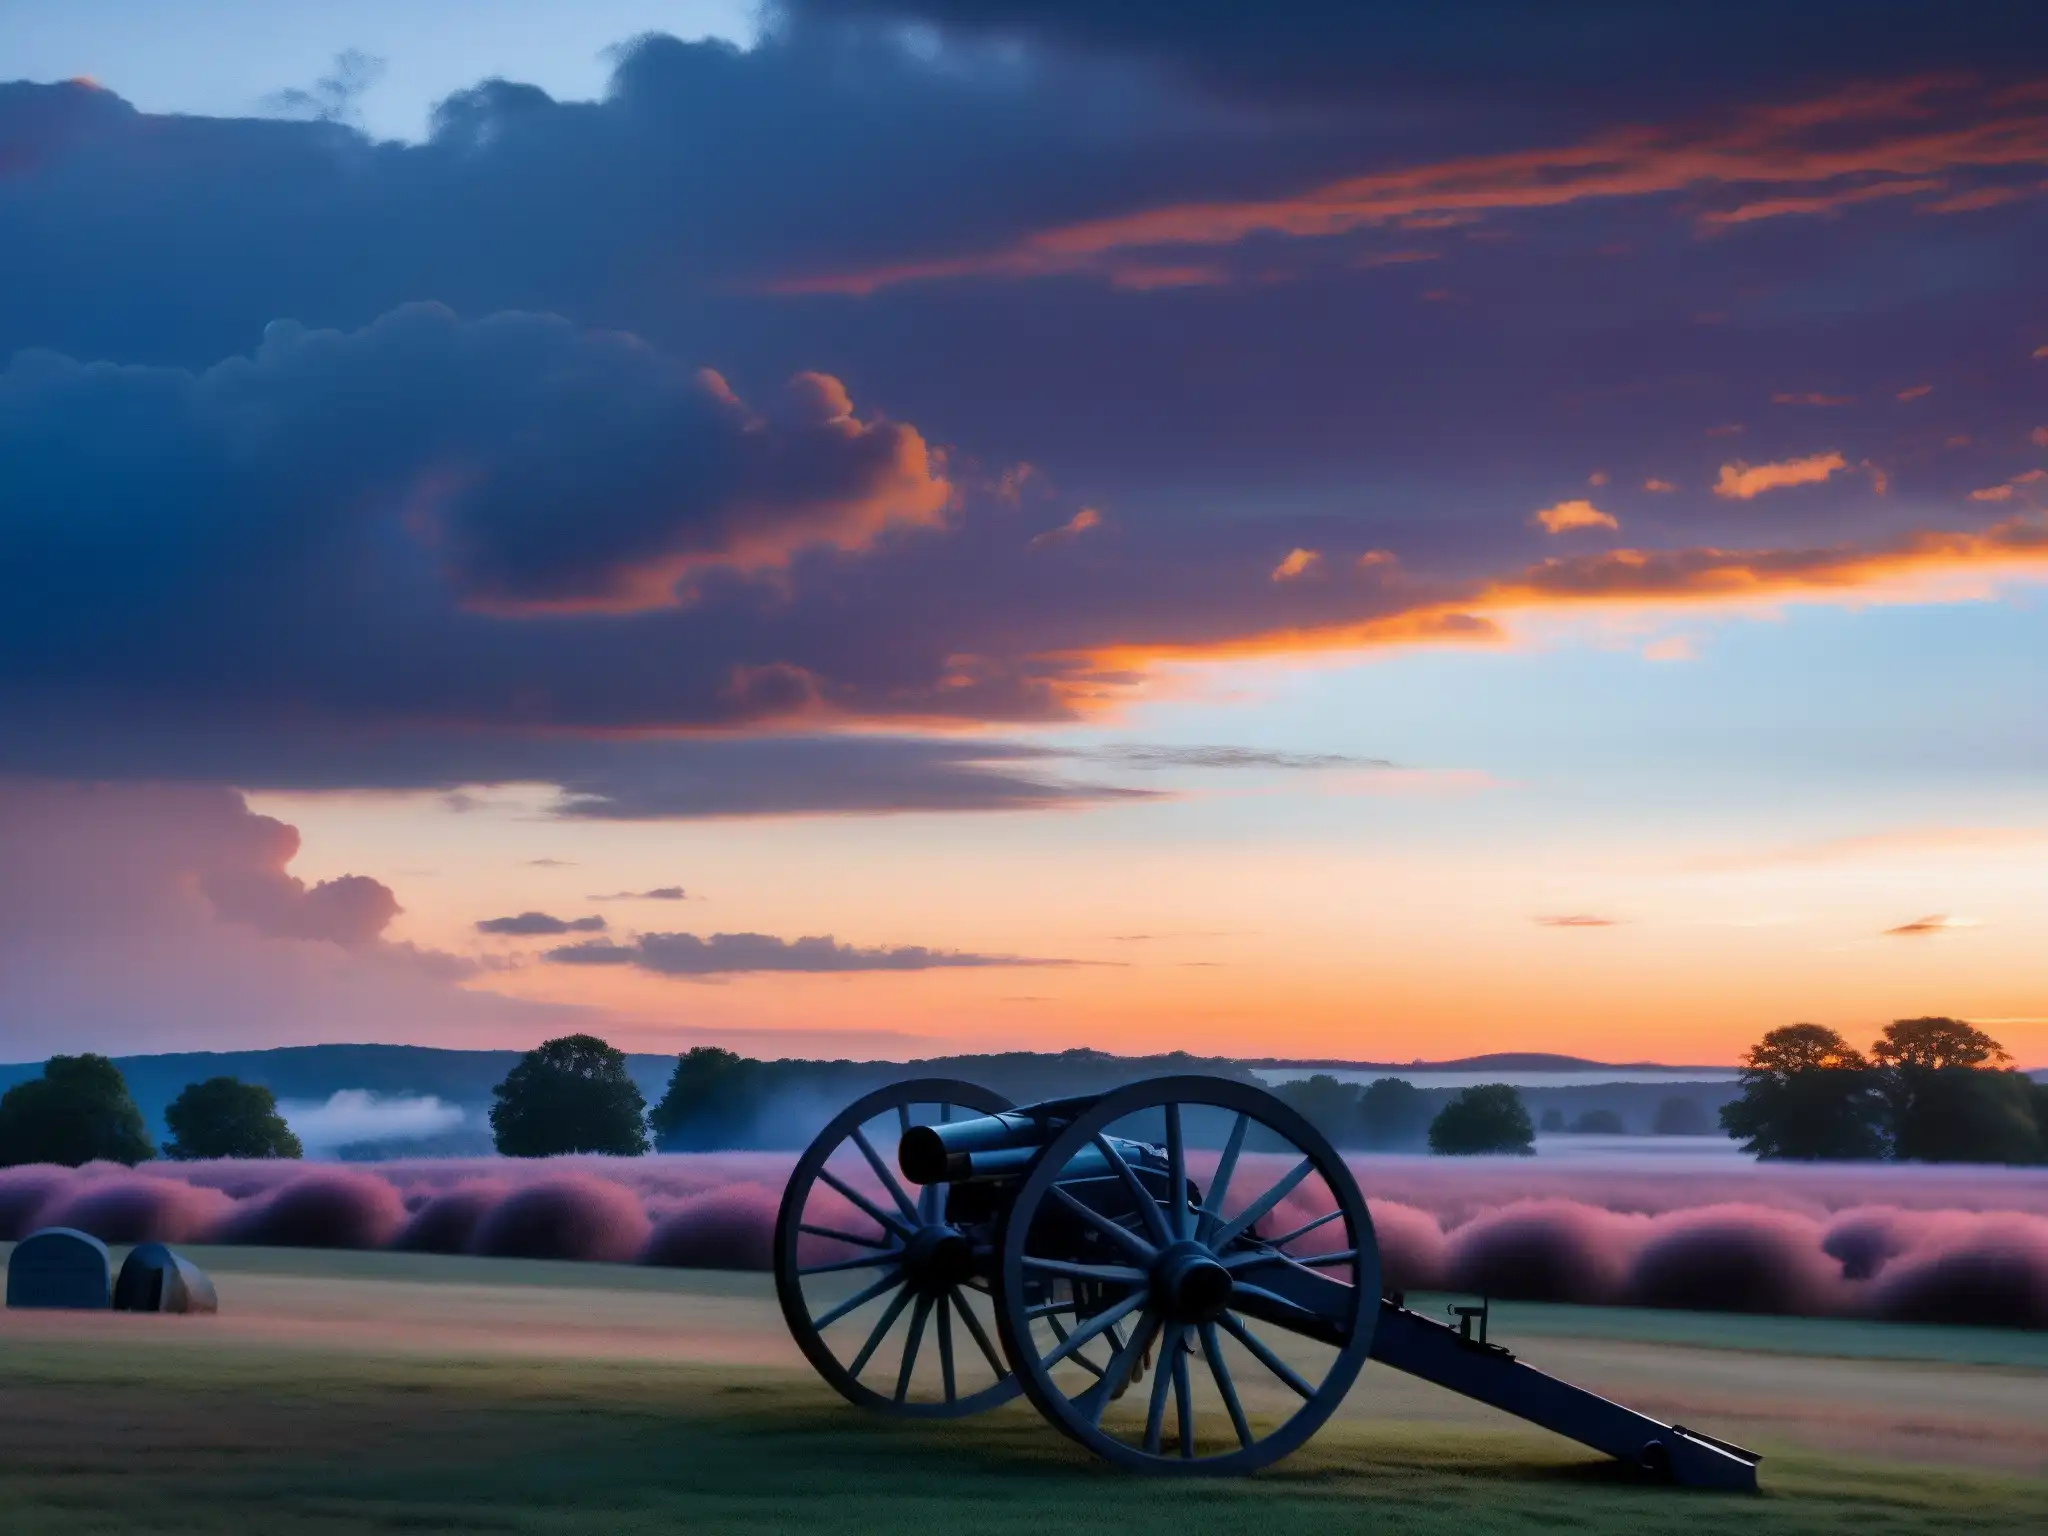 Una vista misteriosa del campo de batalla histórico de Gettysburg al atardecer, con una atmósfera fantasmal